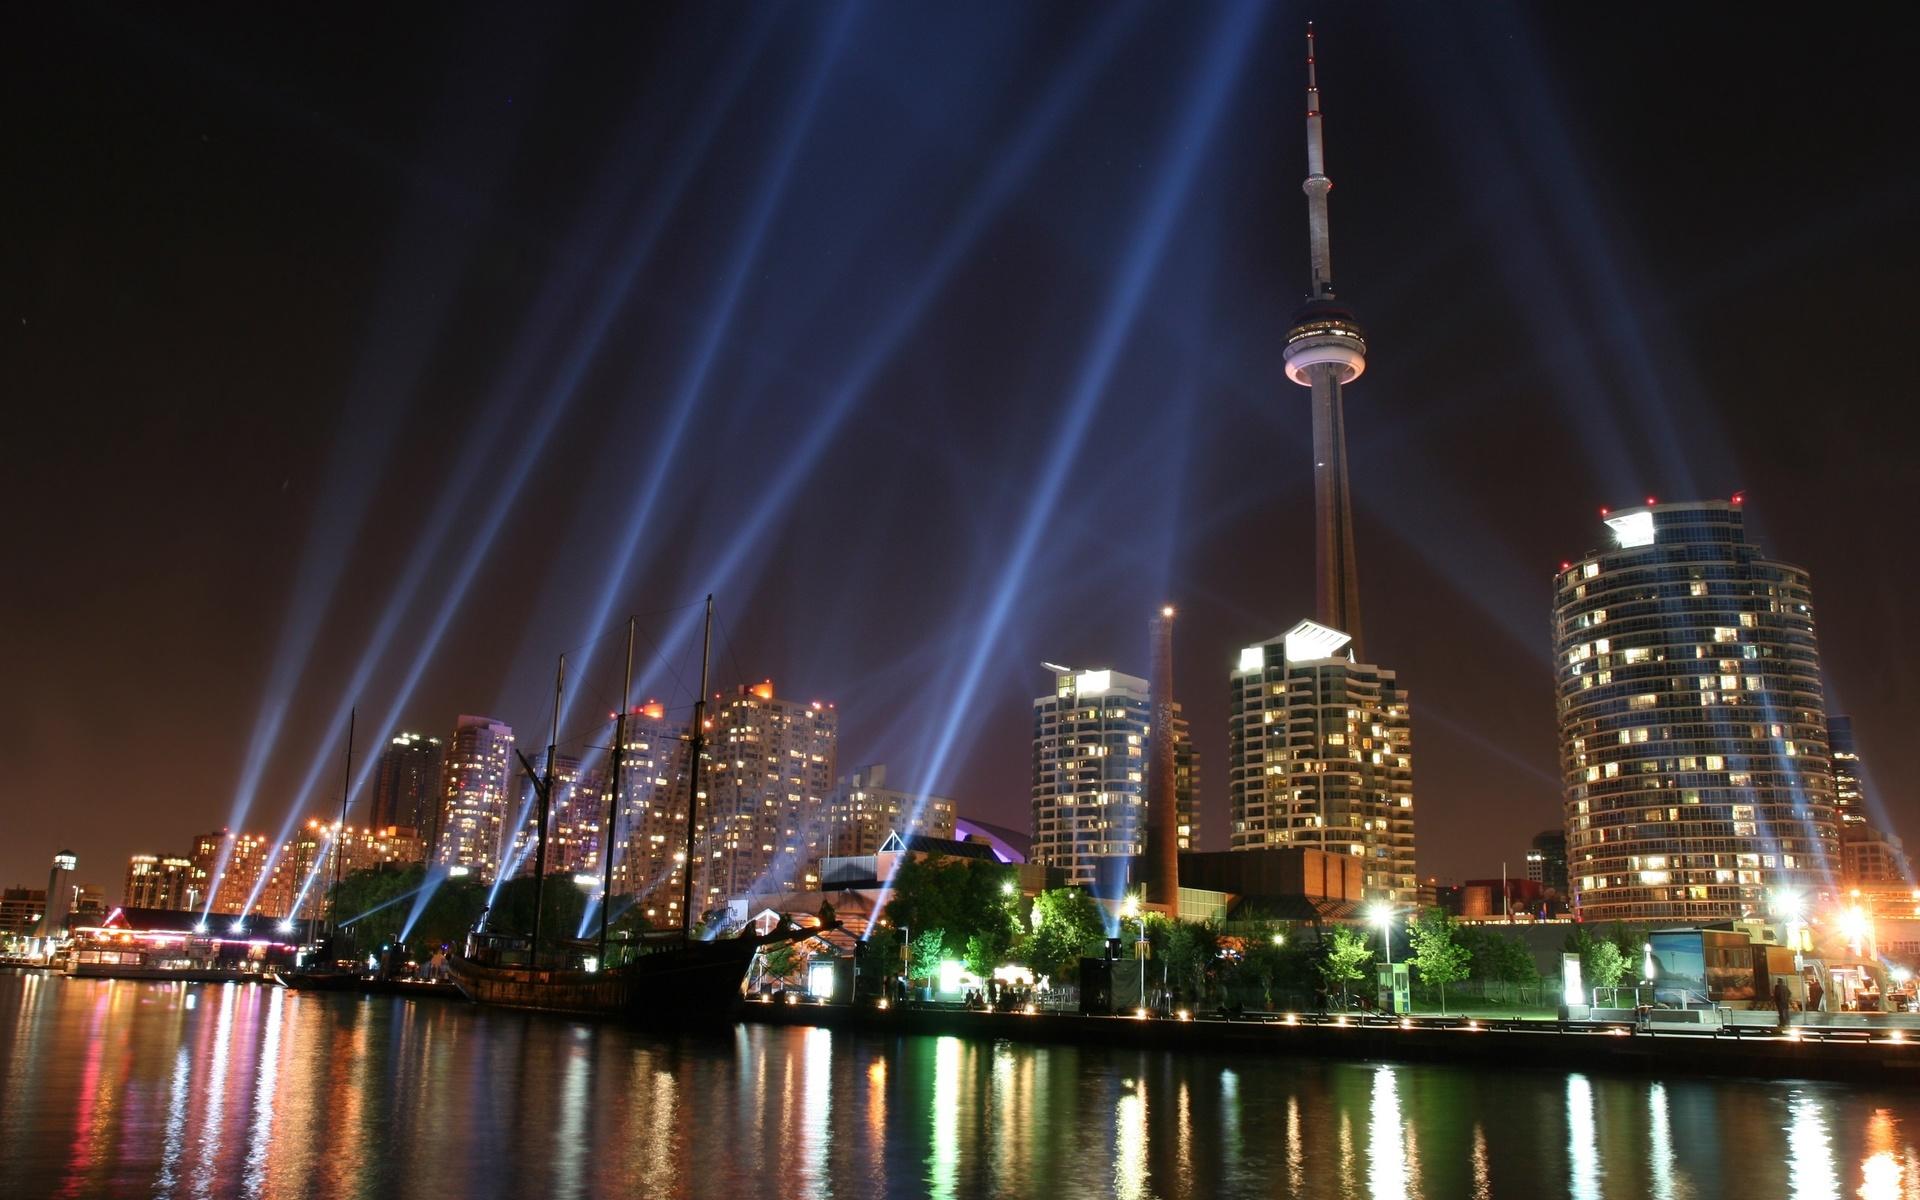 På åttondeplats återfinns Kanada och Australien som får 184 poäng enligt Henley Passport Index. Bilden visar Toronto som är Kanadas största stad.